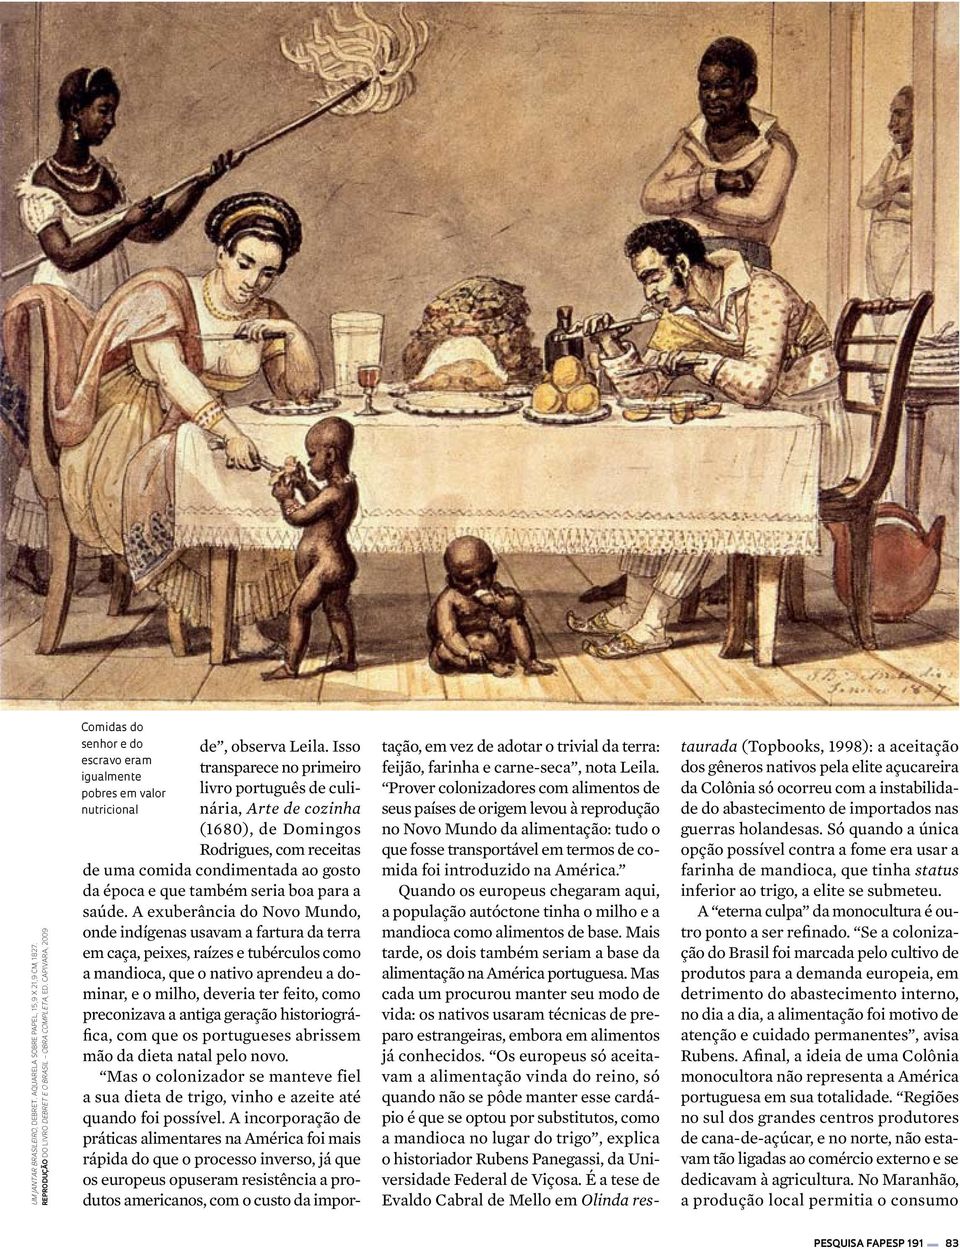 Isso transparece no primeiro livro português de culinária, Arte de cozinha (1680), de Domingos Rodrigues, com receitas tação, em vez de adotar o trivial da terra: feijão, farinha e carne-seca, nota